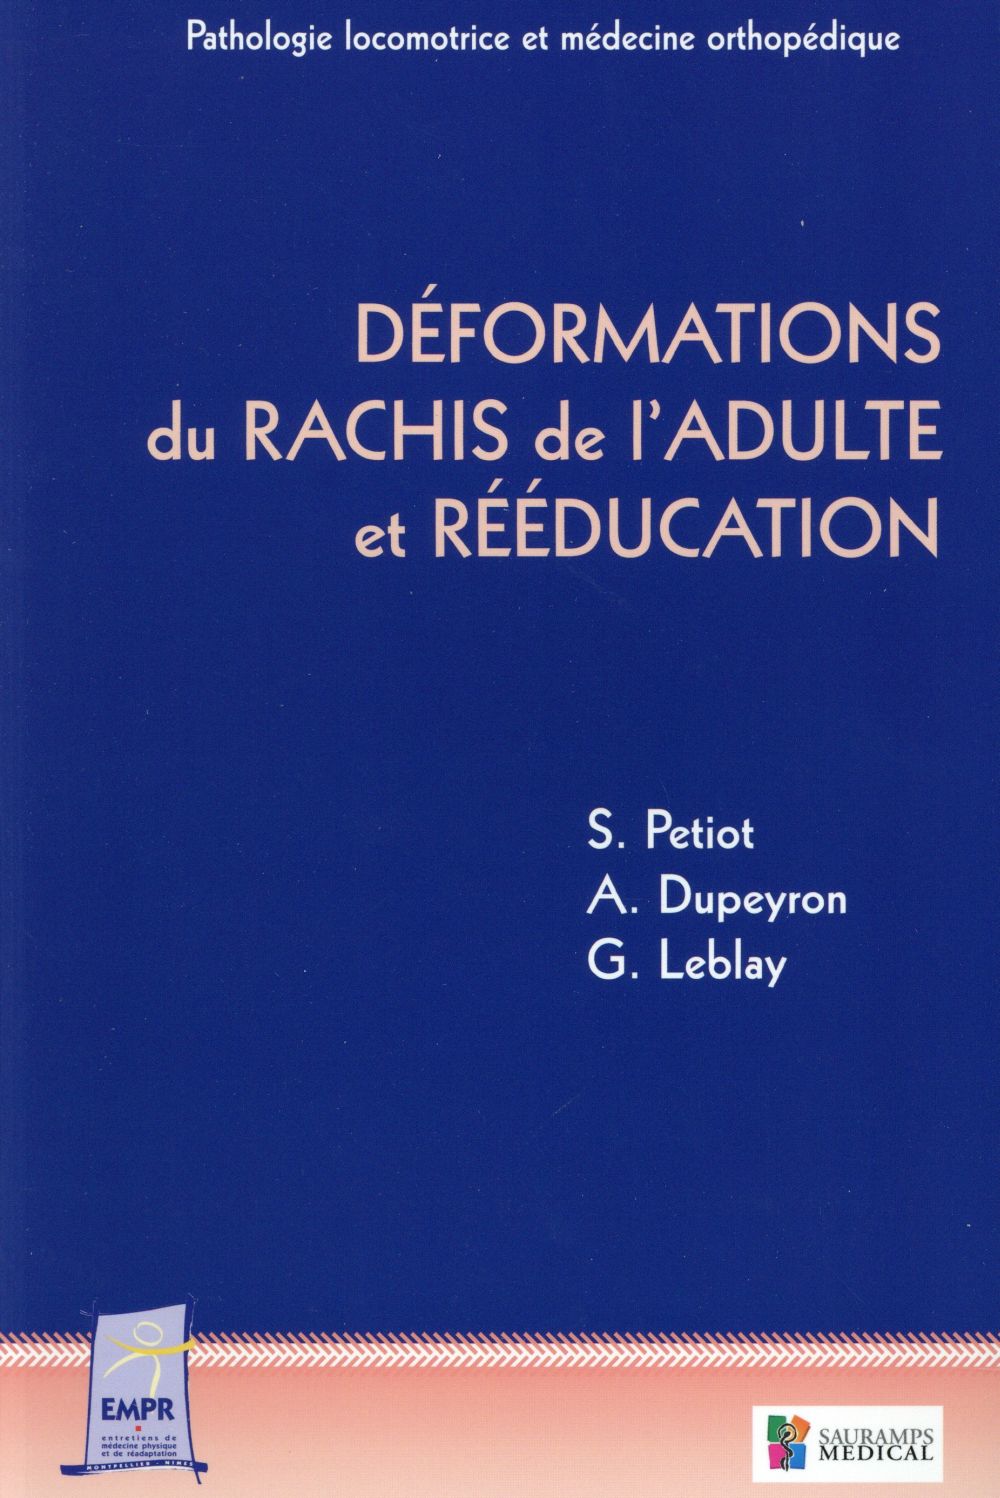 DEFORMATIONS DU RACHIS DE L'ADULTE ET REEDUCATION